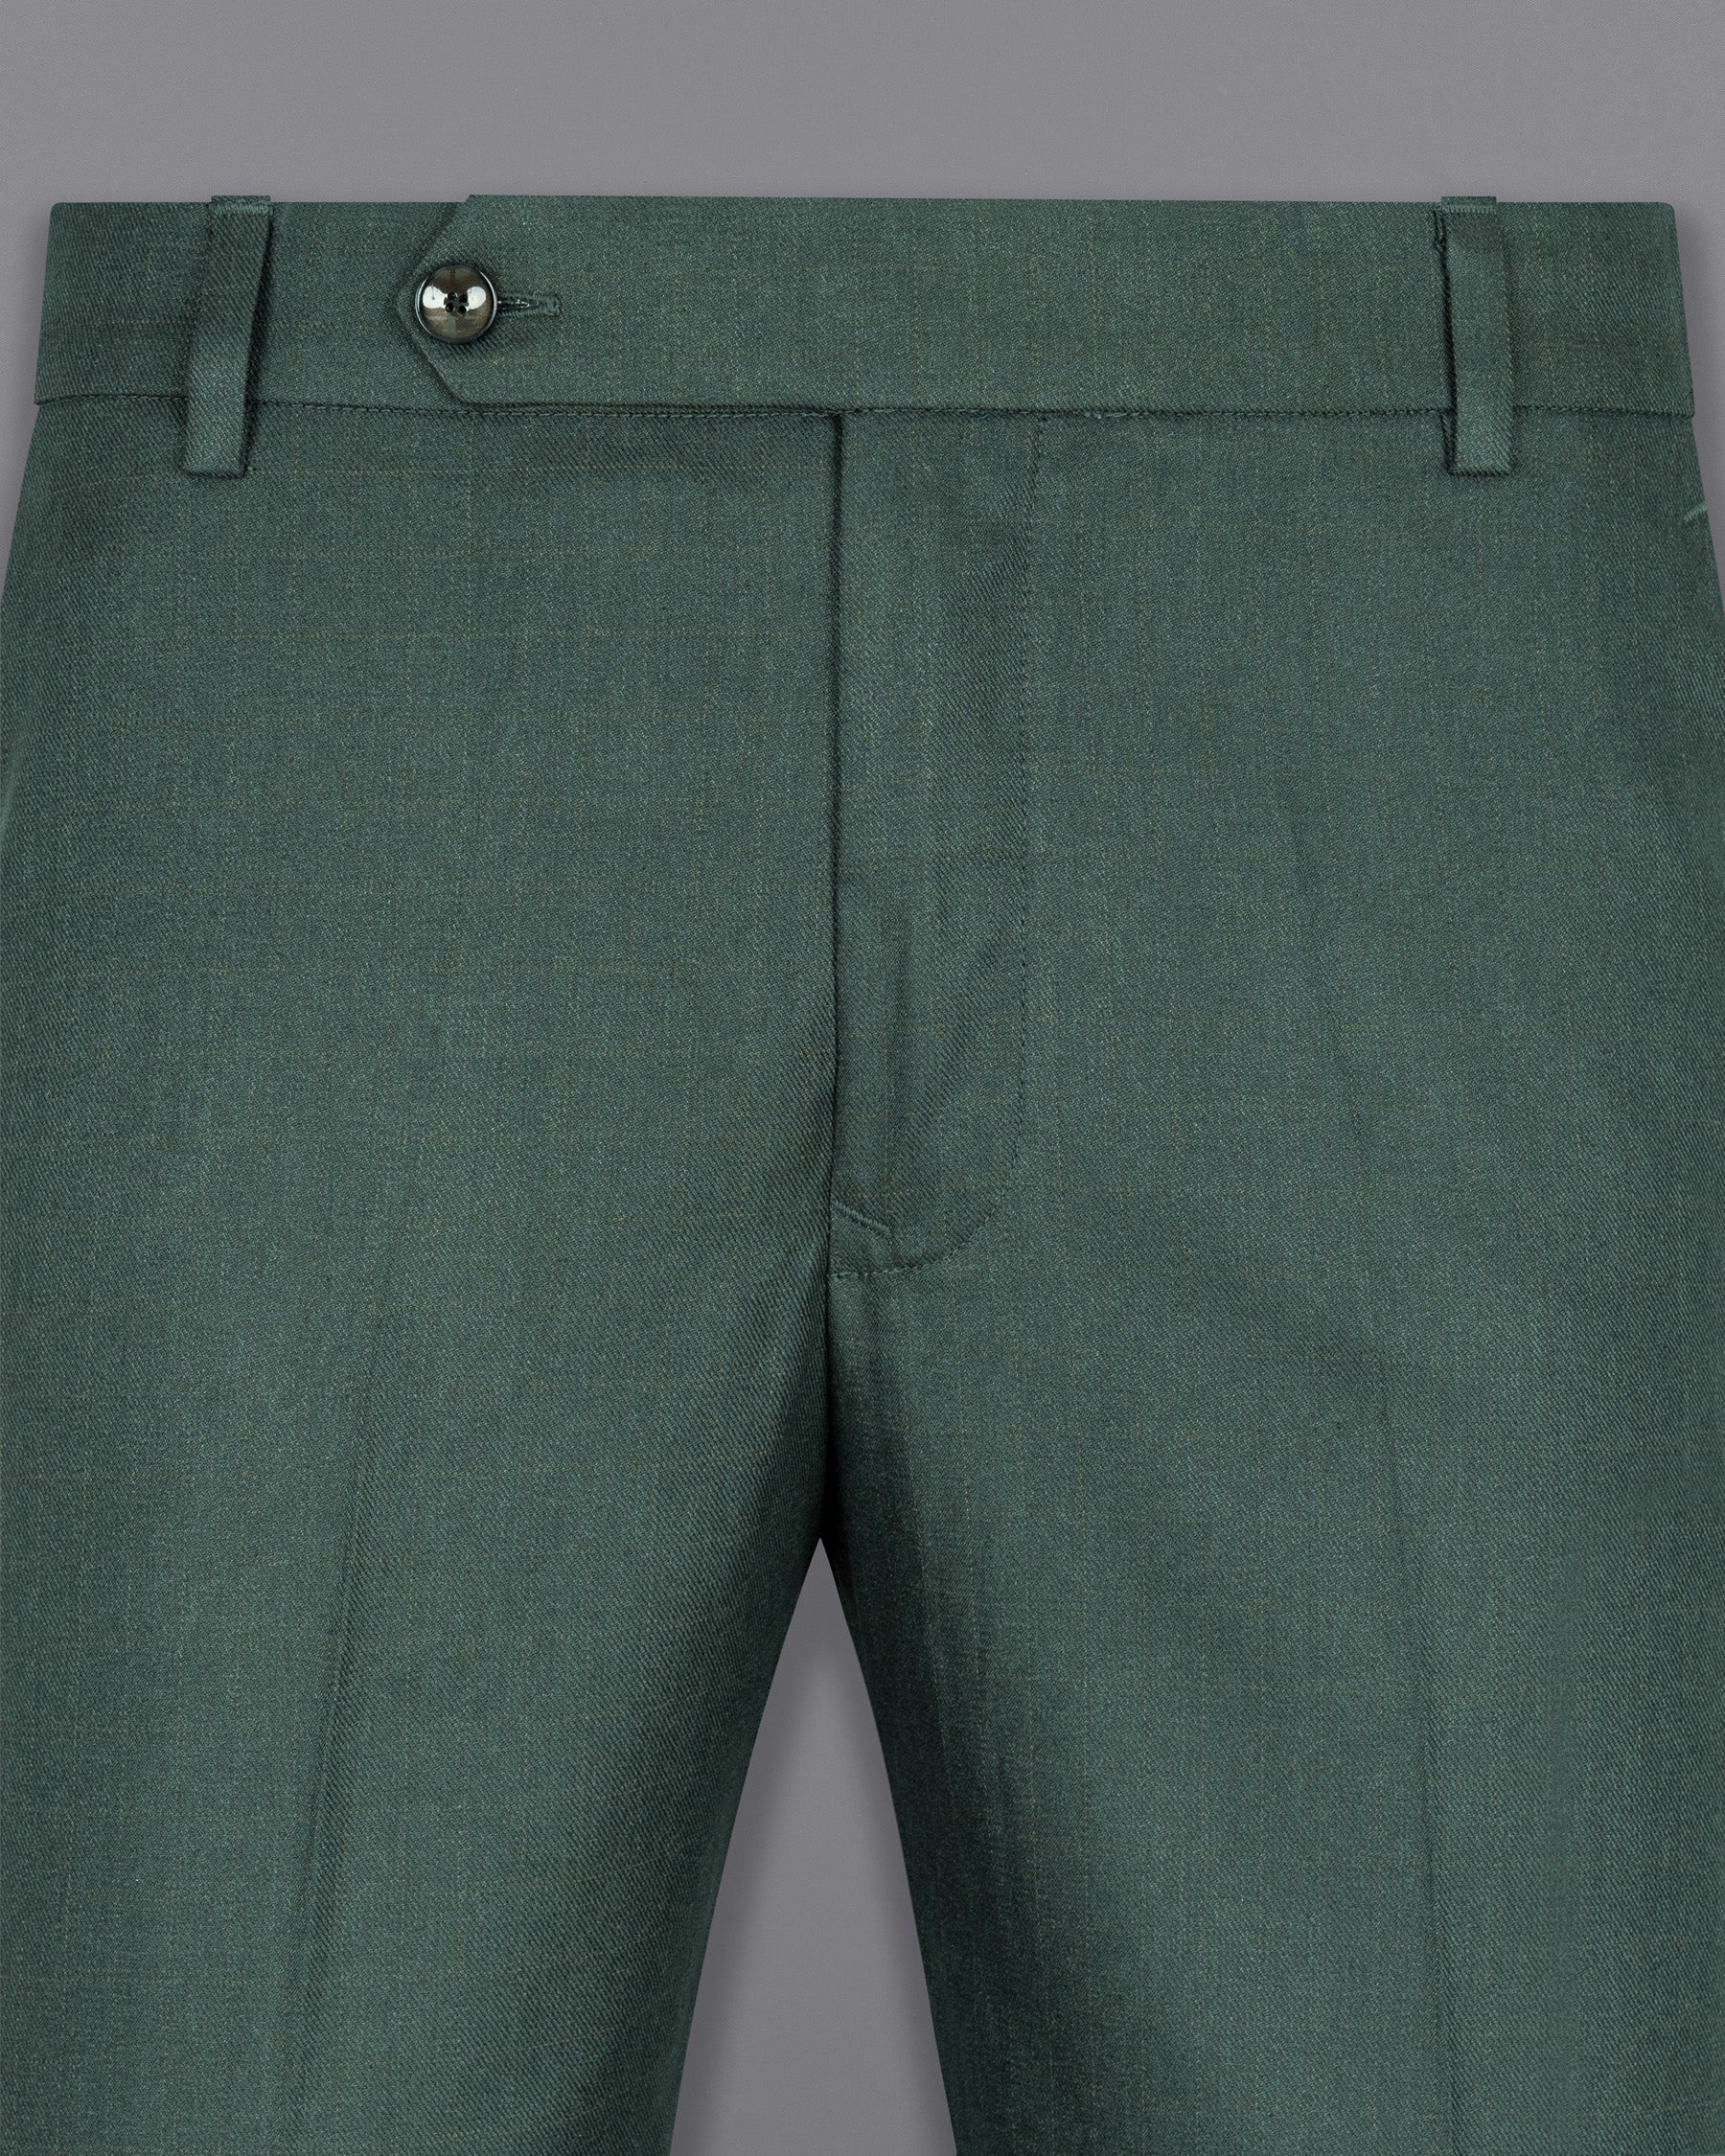 Firefly Green Wool Rich Pant T1470-28, T1470-30, T1470-32, T1470-34, T1470-36, T1470-38, T1470-40, T1470-42, T1470-44